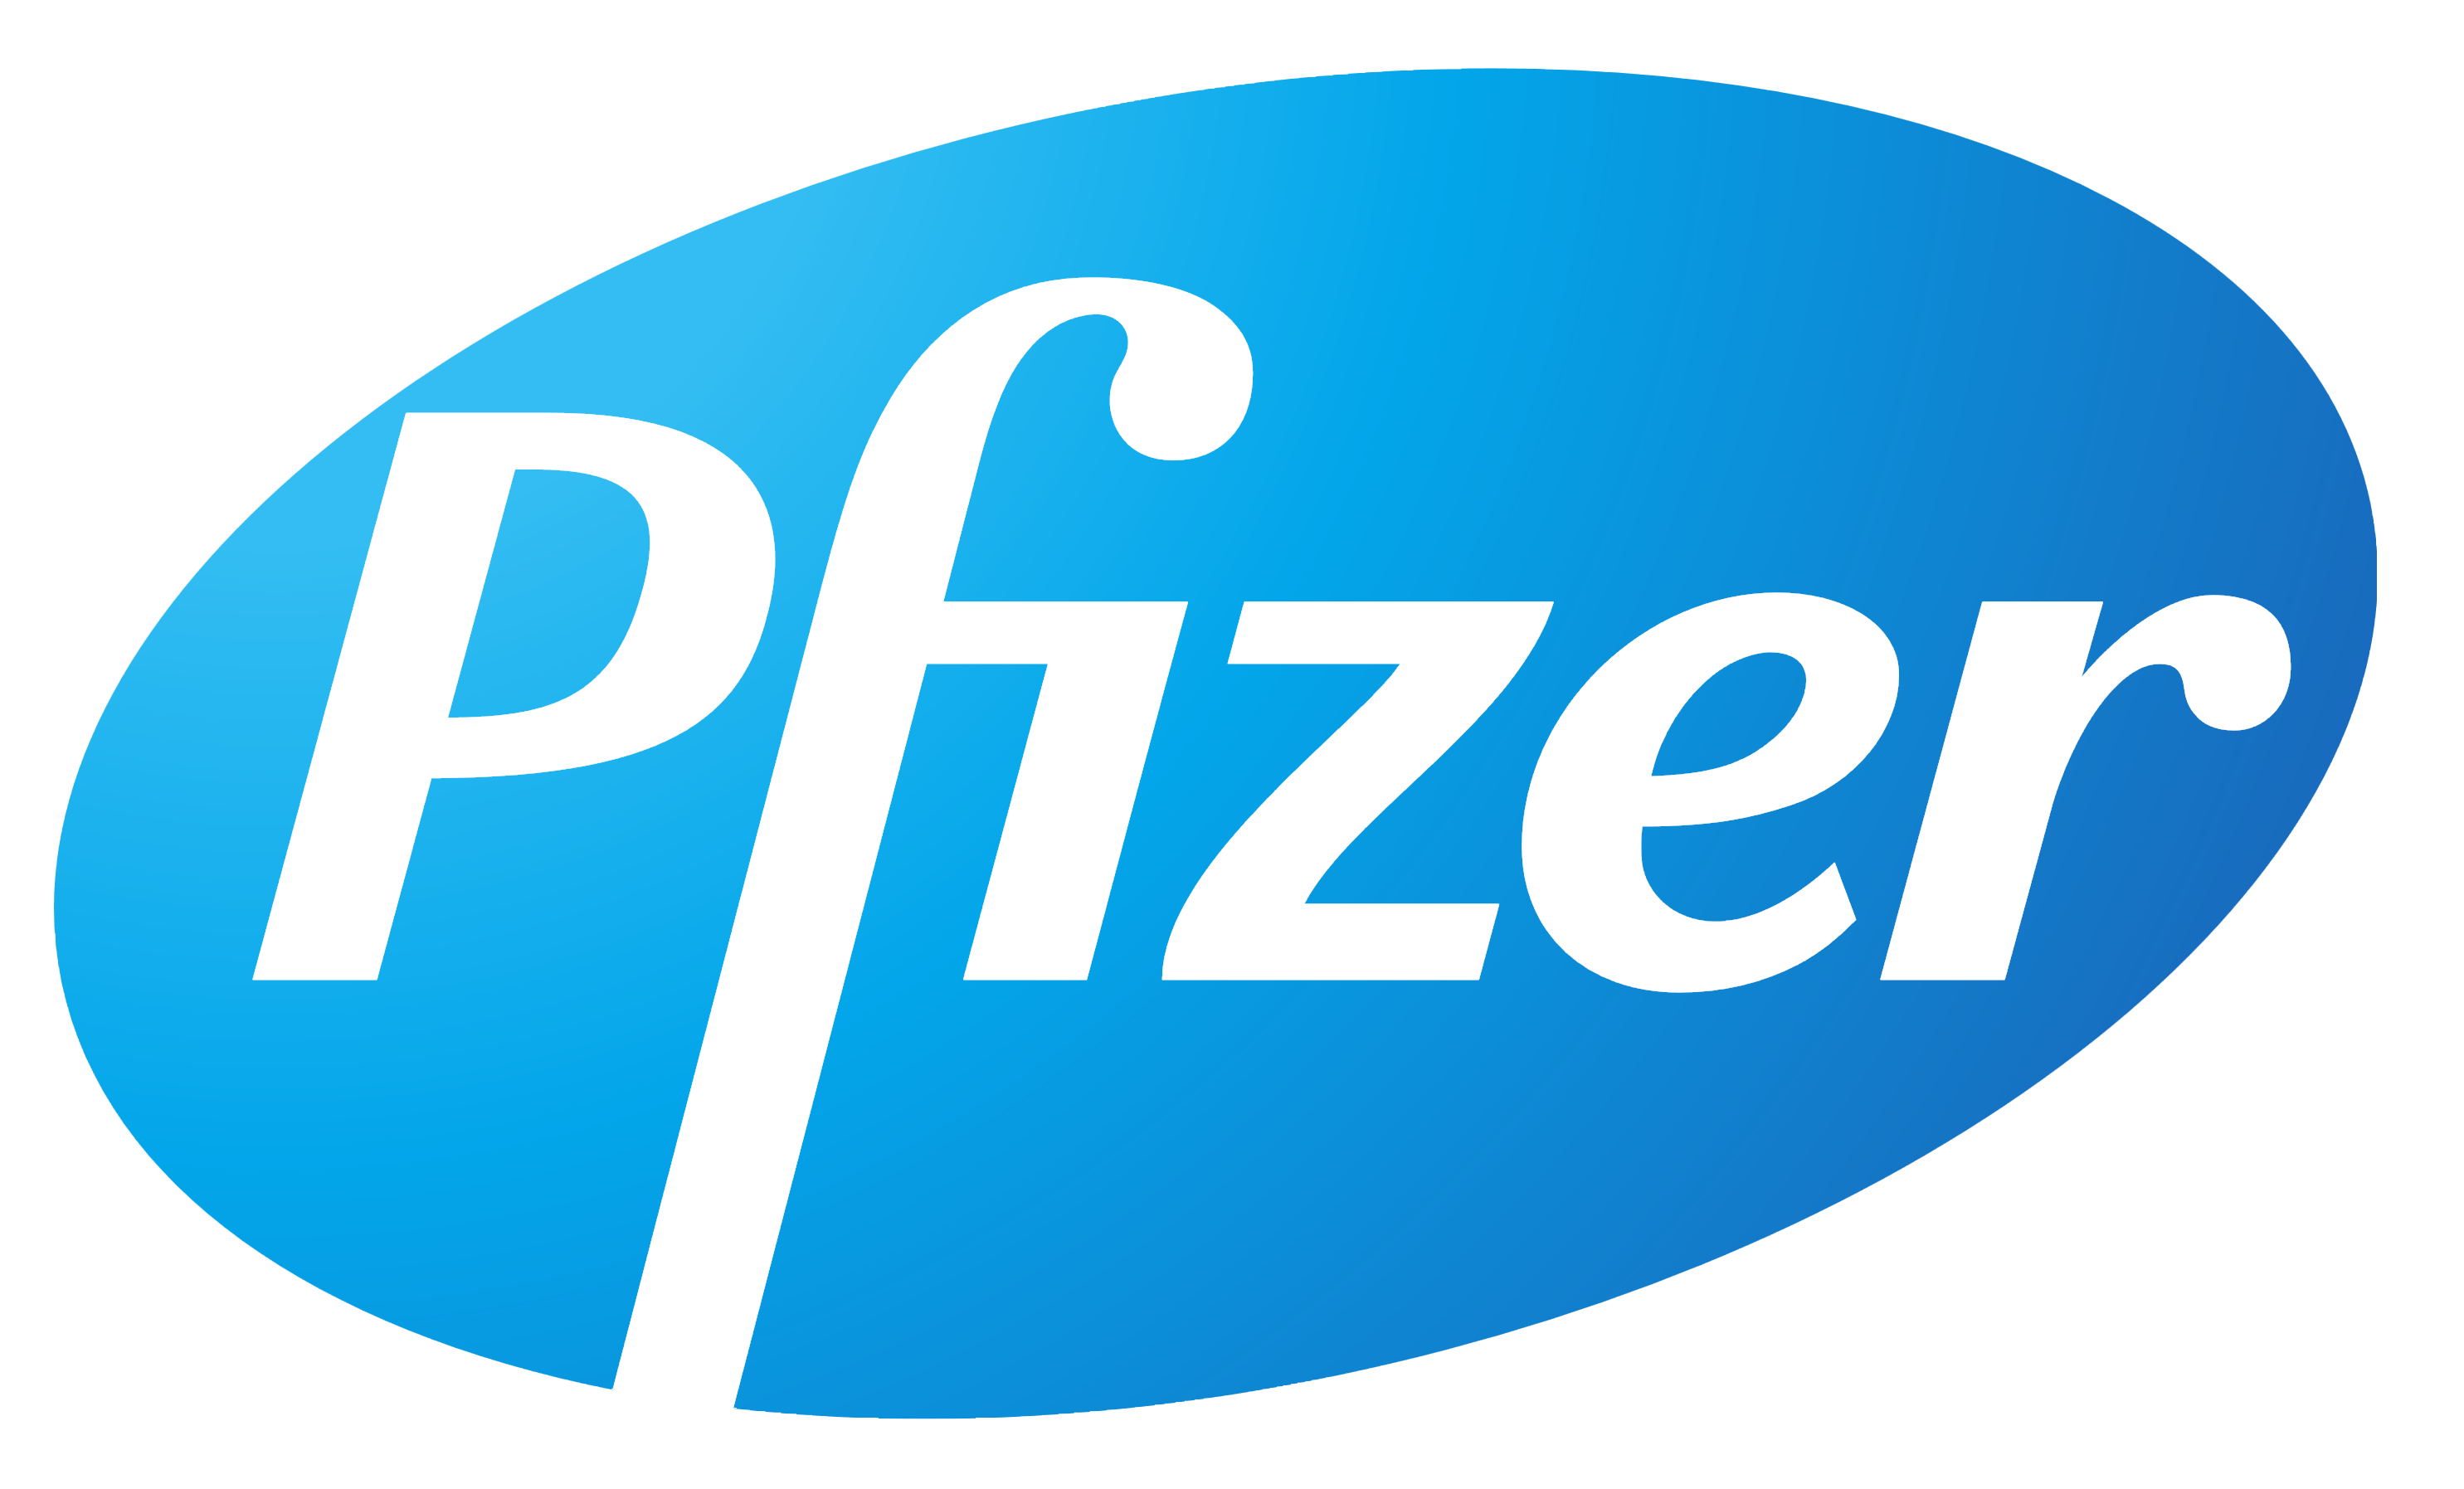 Pfizer – Logos Download